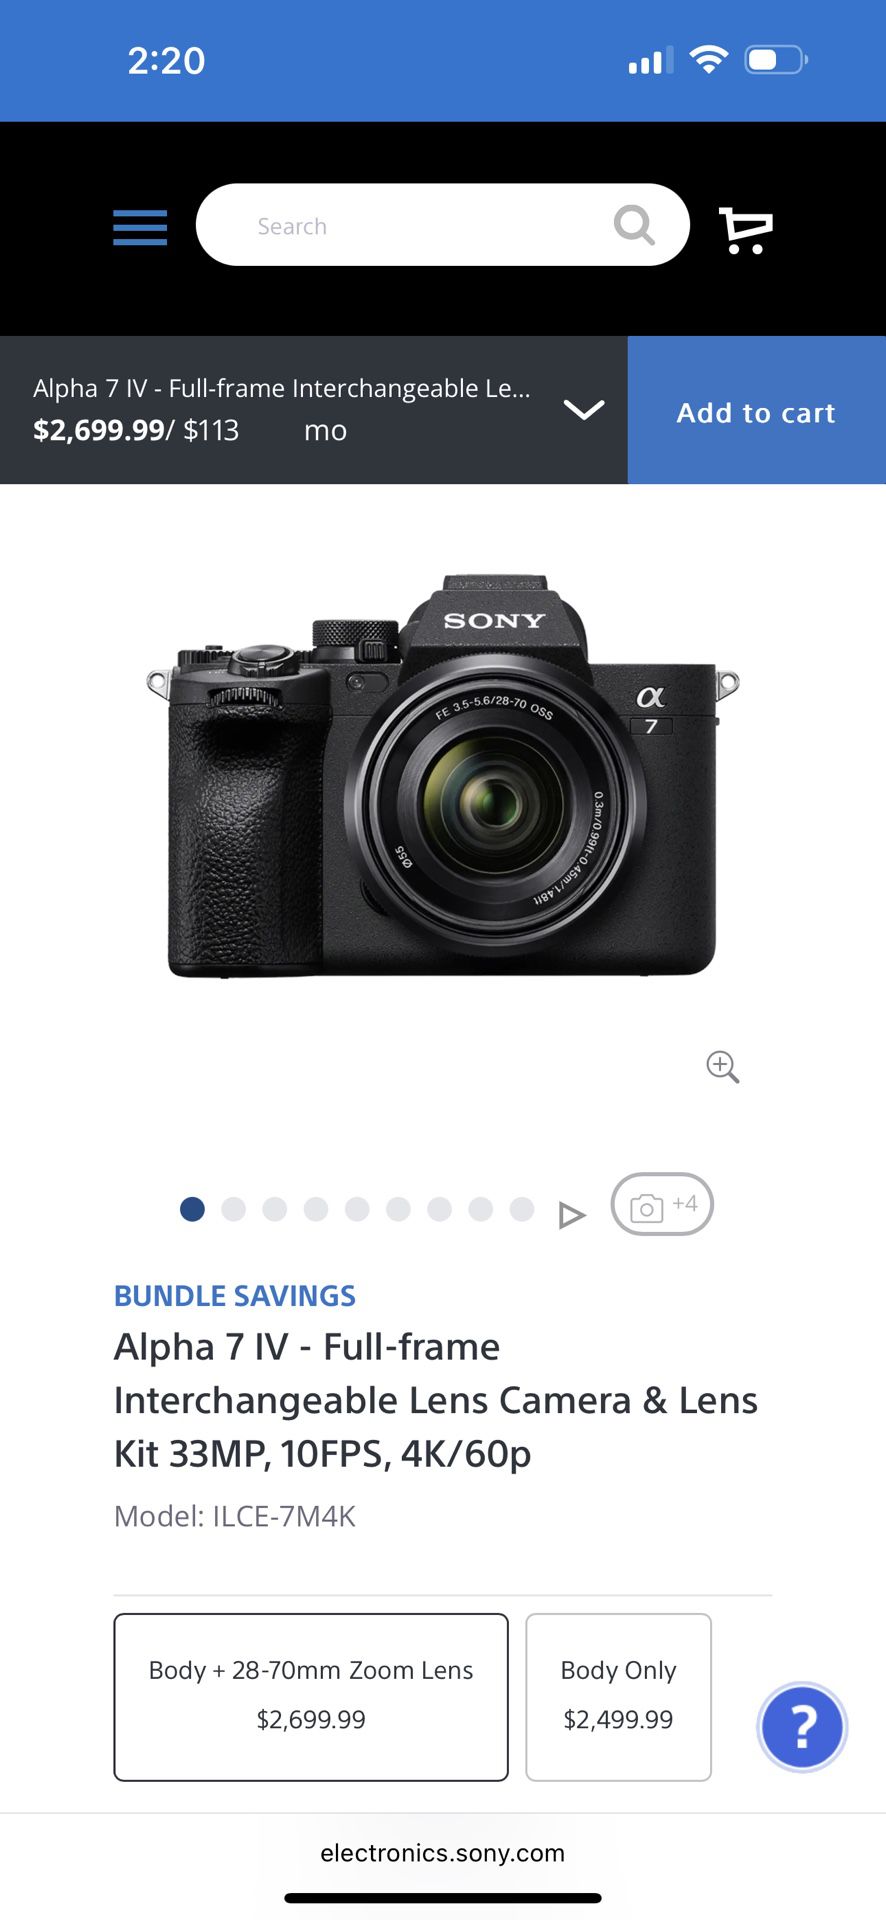 Sony Alpha 7 IV - Full-frame Interchangeable Lens Camera & Lens Kit 33MP, 10FPS, 4K/60p